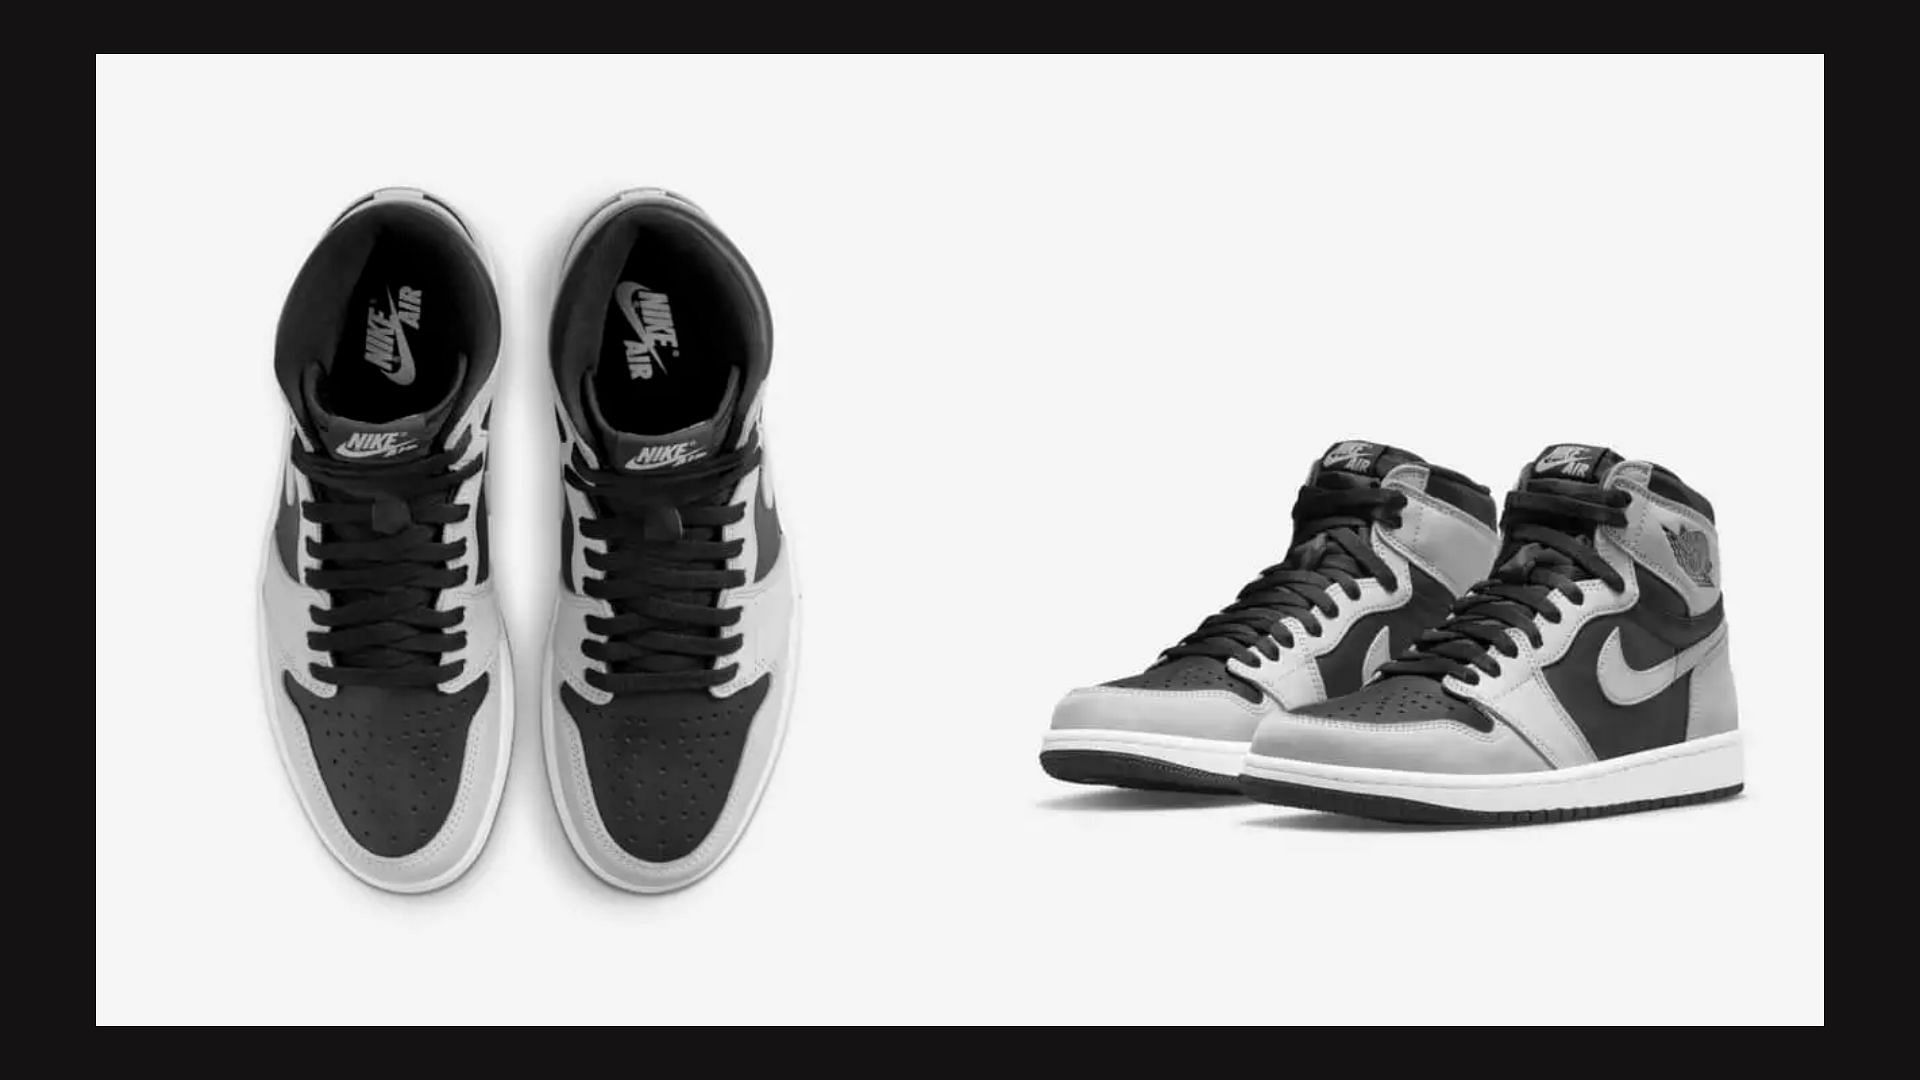 Air Jordan 1 Retro High Shadow 2.0 (Image via Nike)